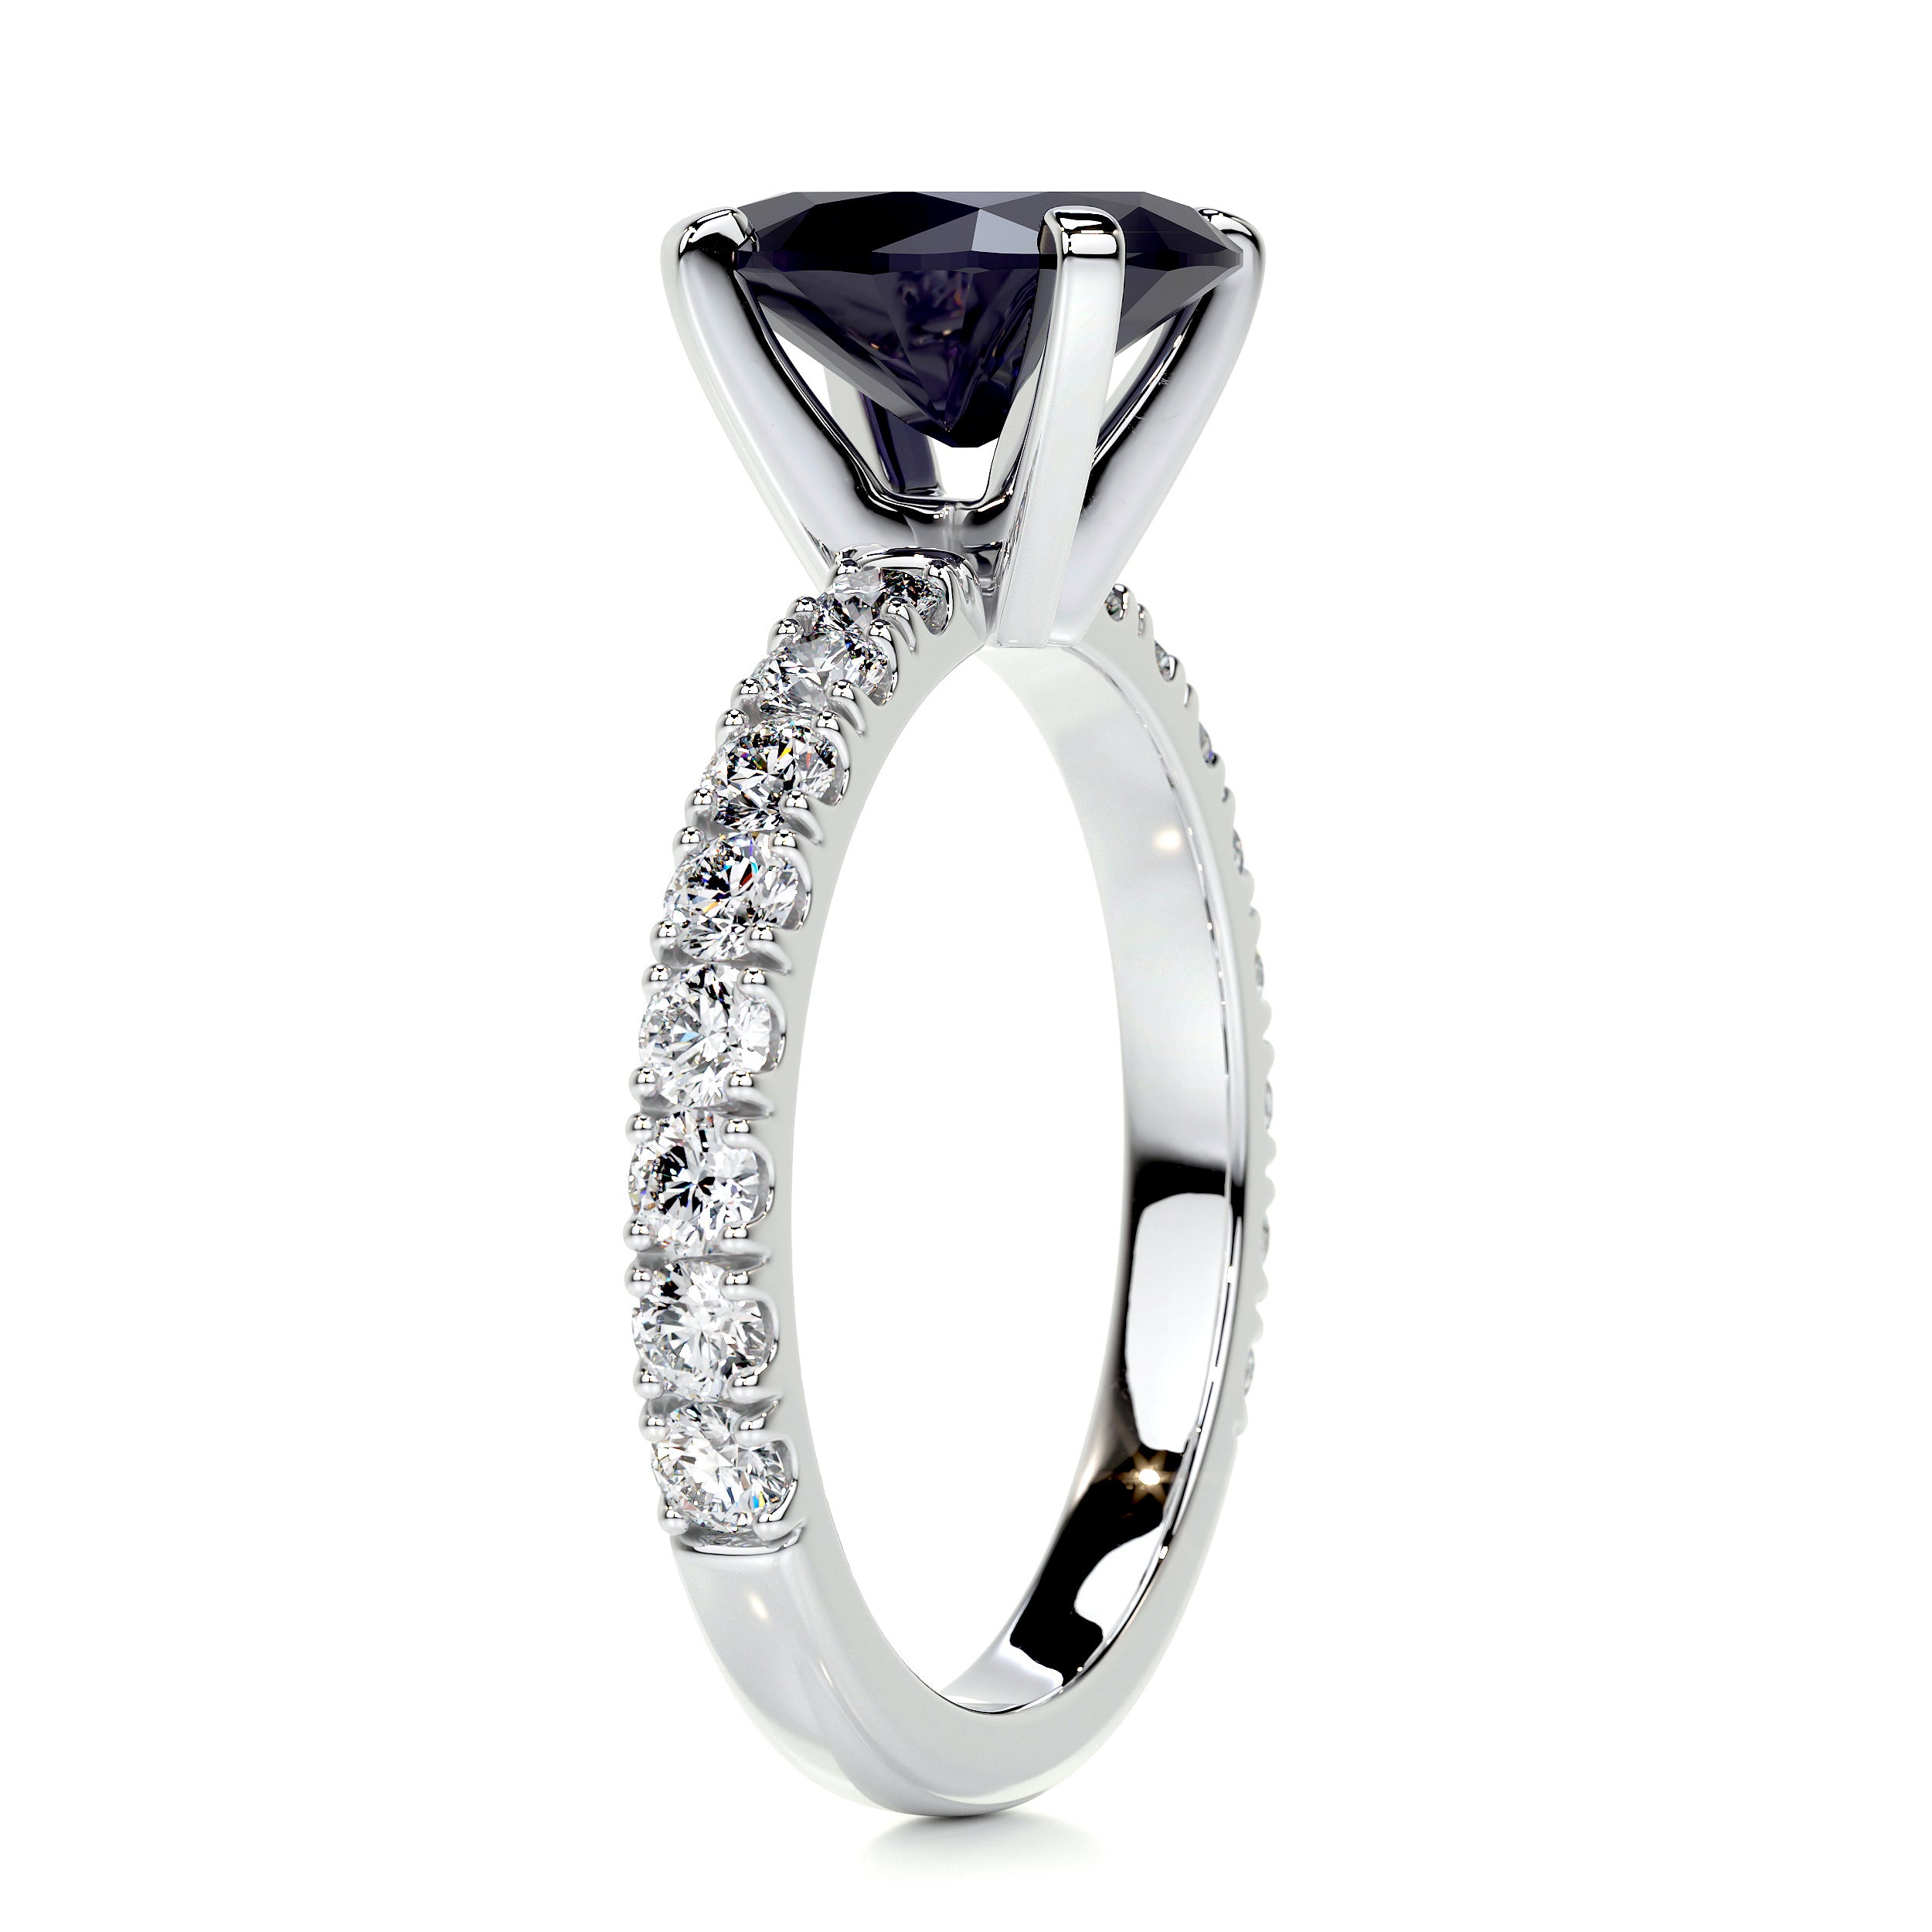 Alison Gemstone & Diamonds Ring   (3 Carat) -Platinum